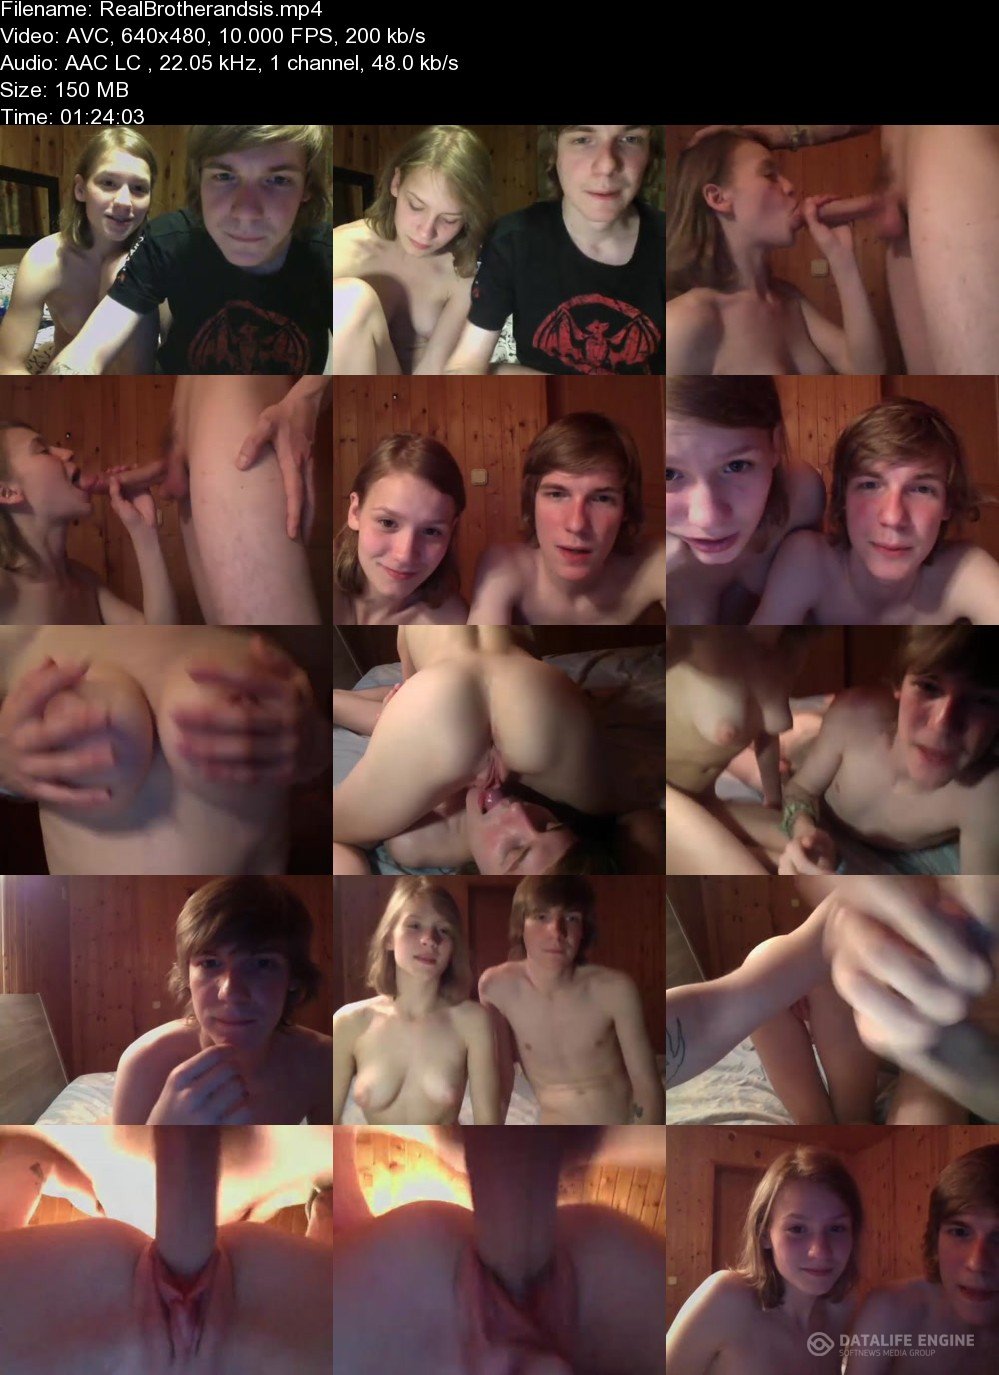 Amateurporn: Amateur - Teen Sex On Webcam 480p